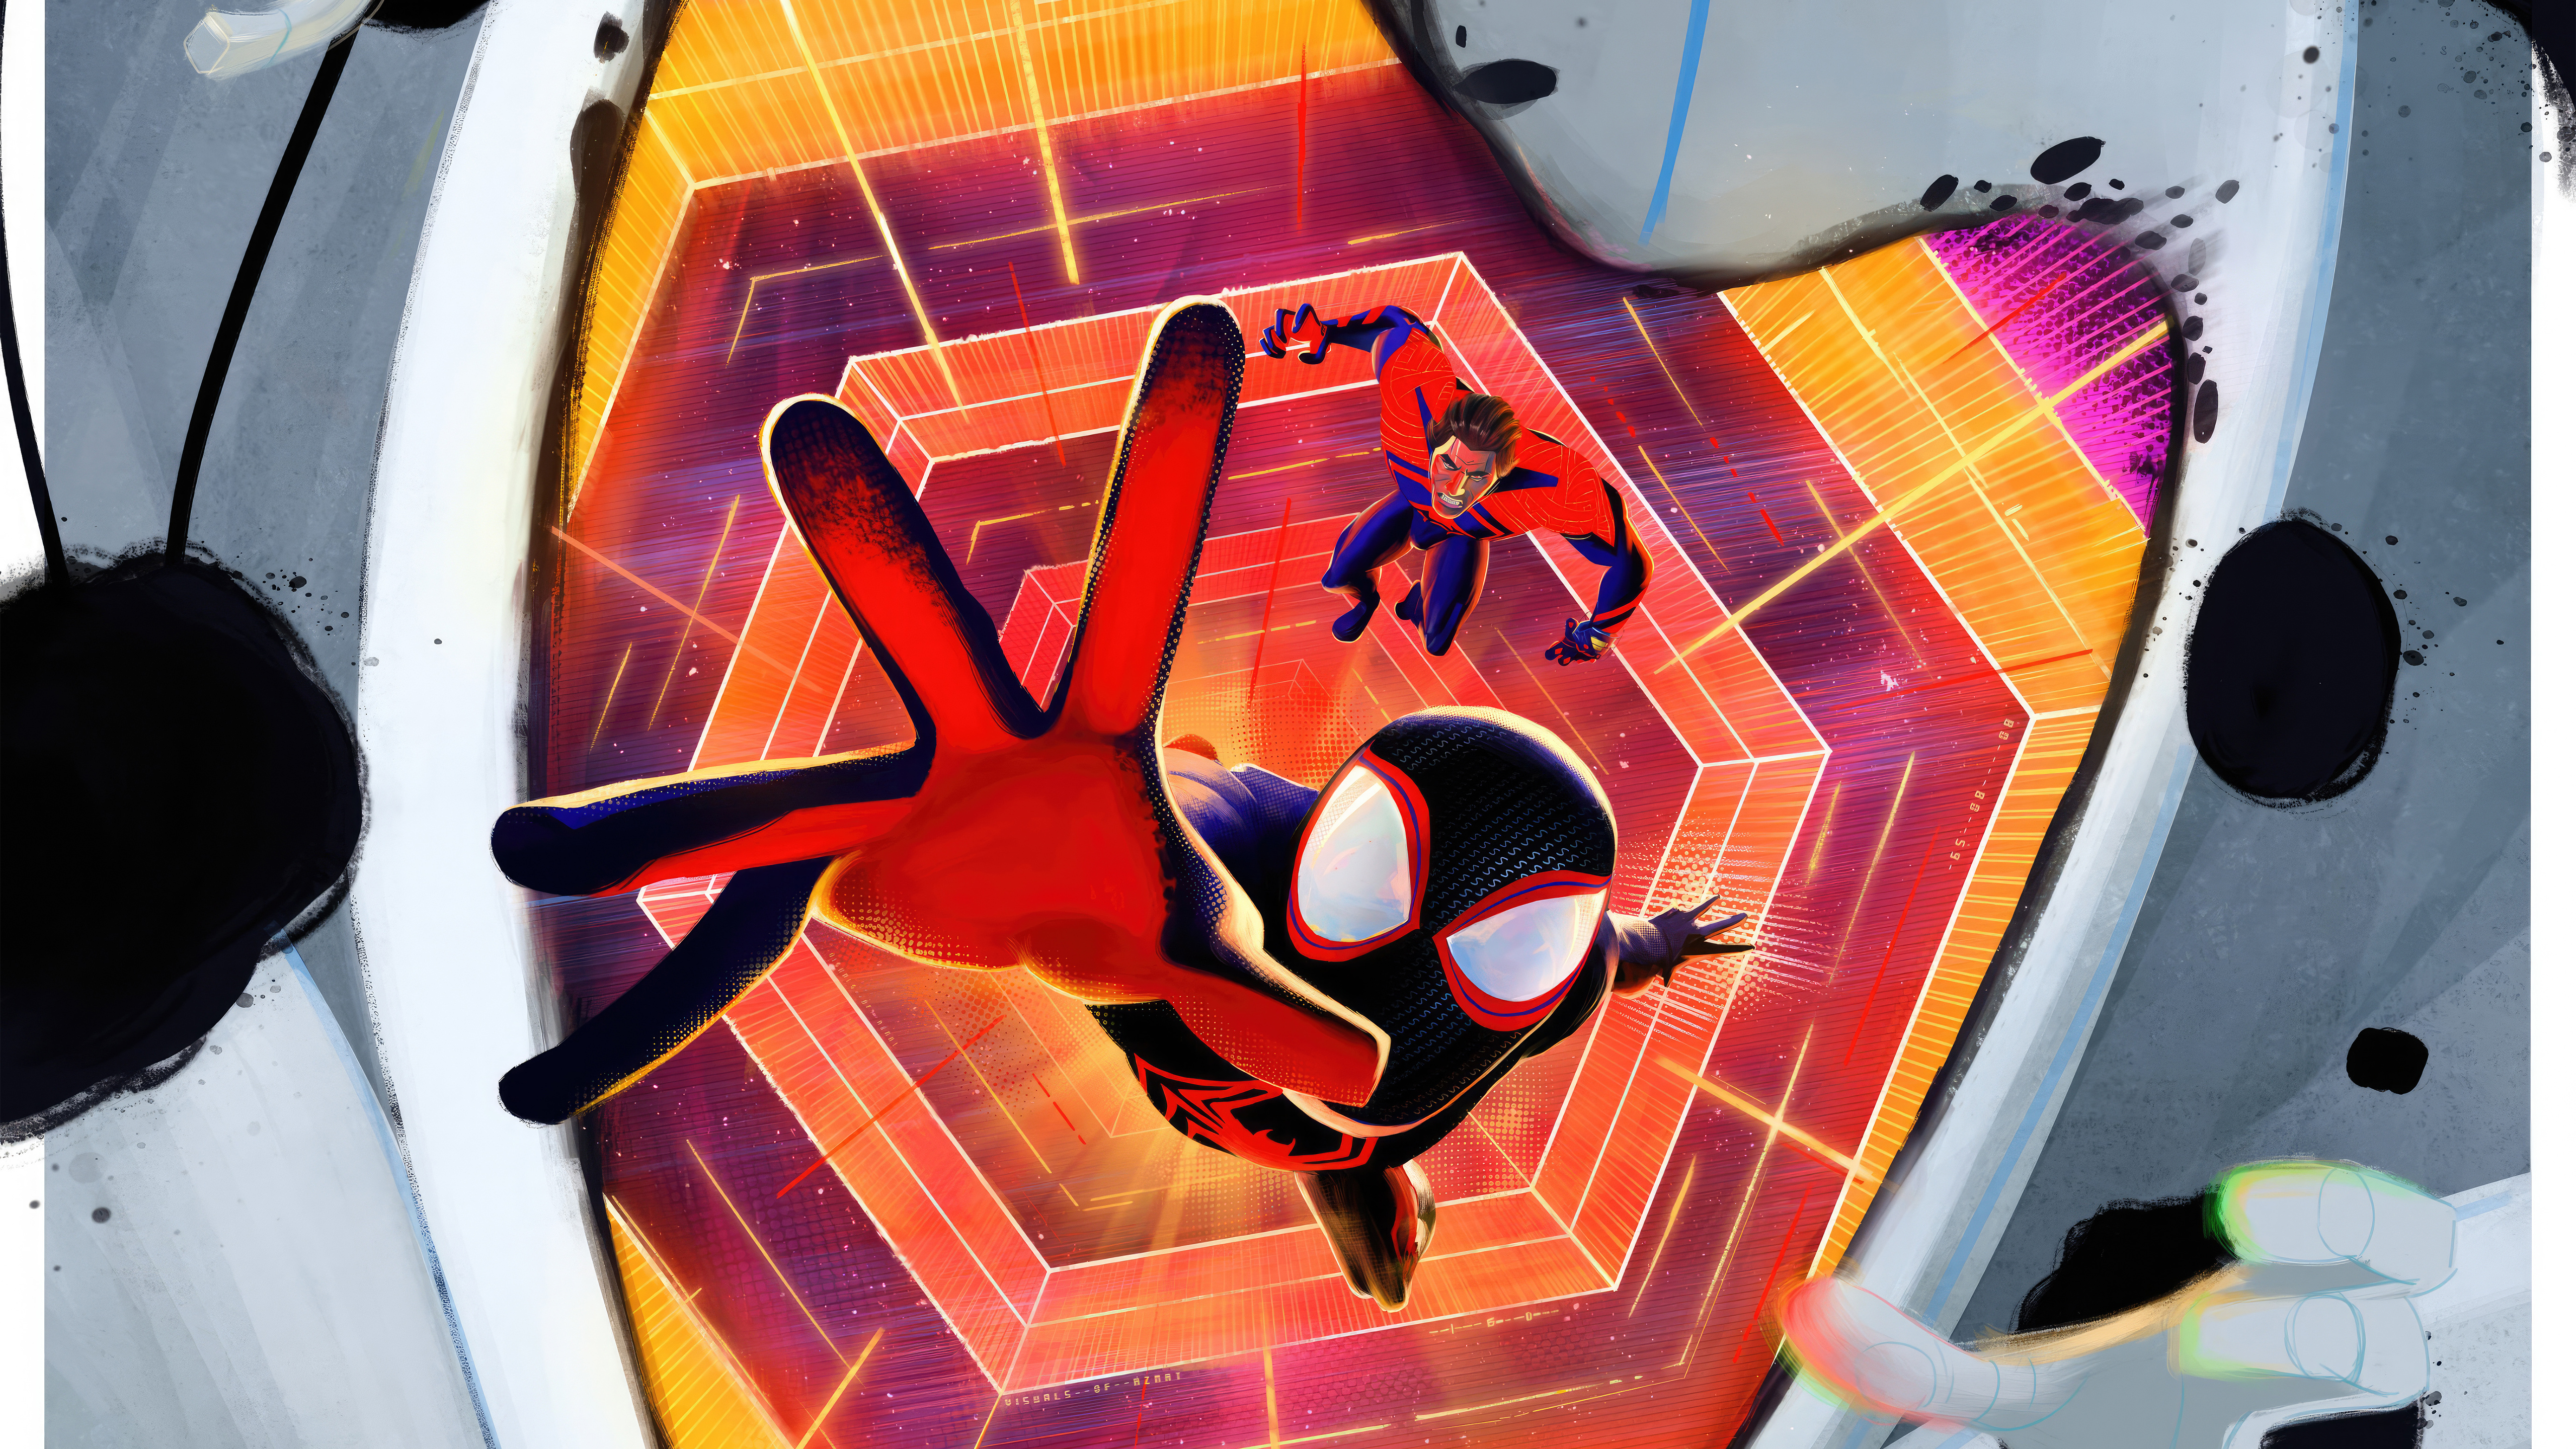 Spider-Man: Across the Spider-Verse Wallpaper 4K, Cover Art, 5K, 8K